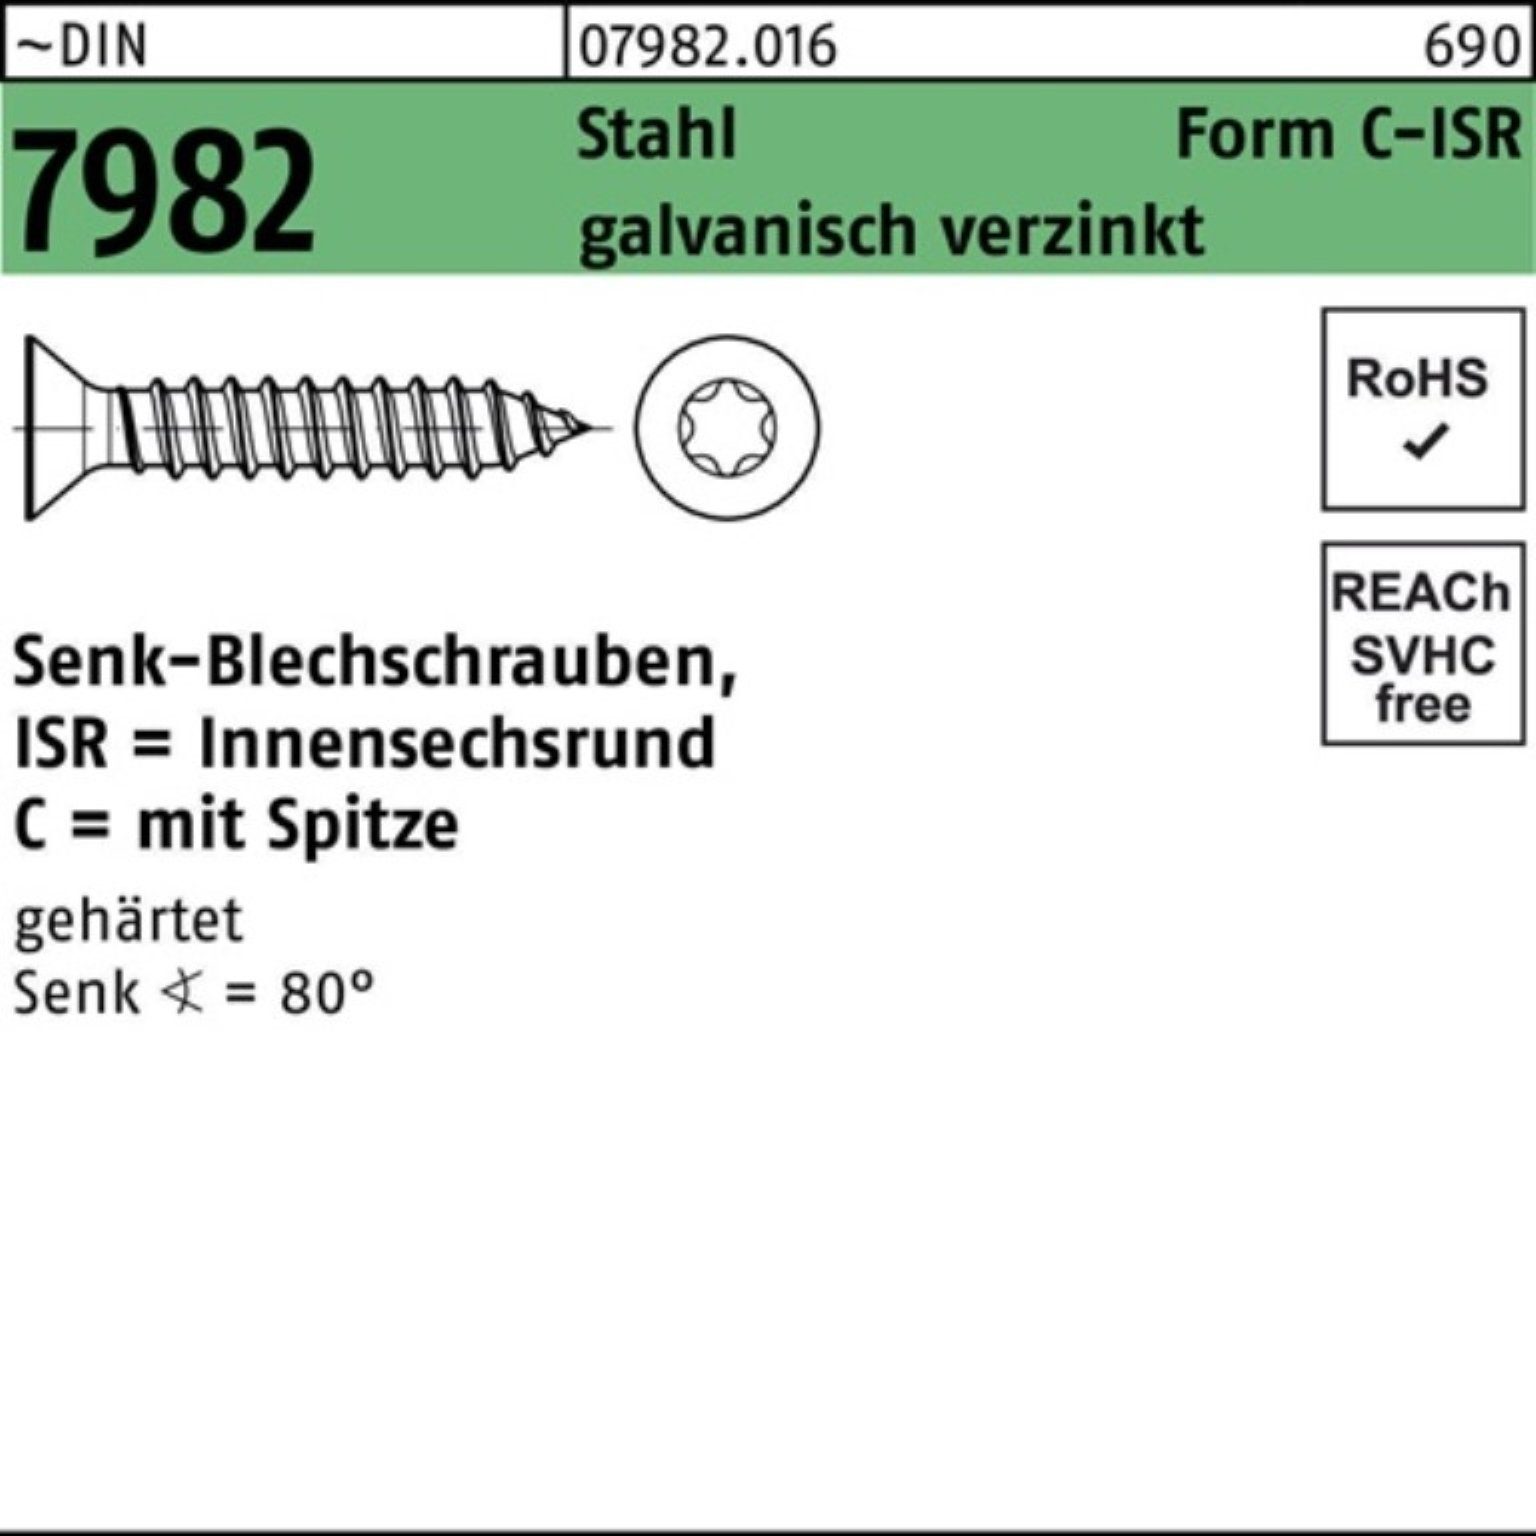 Reyher Schraube 250er Pack Senkblechschraube g DIN -C-T25 ISR/Spitze 7982 4,8x70 Stahl